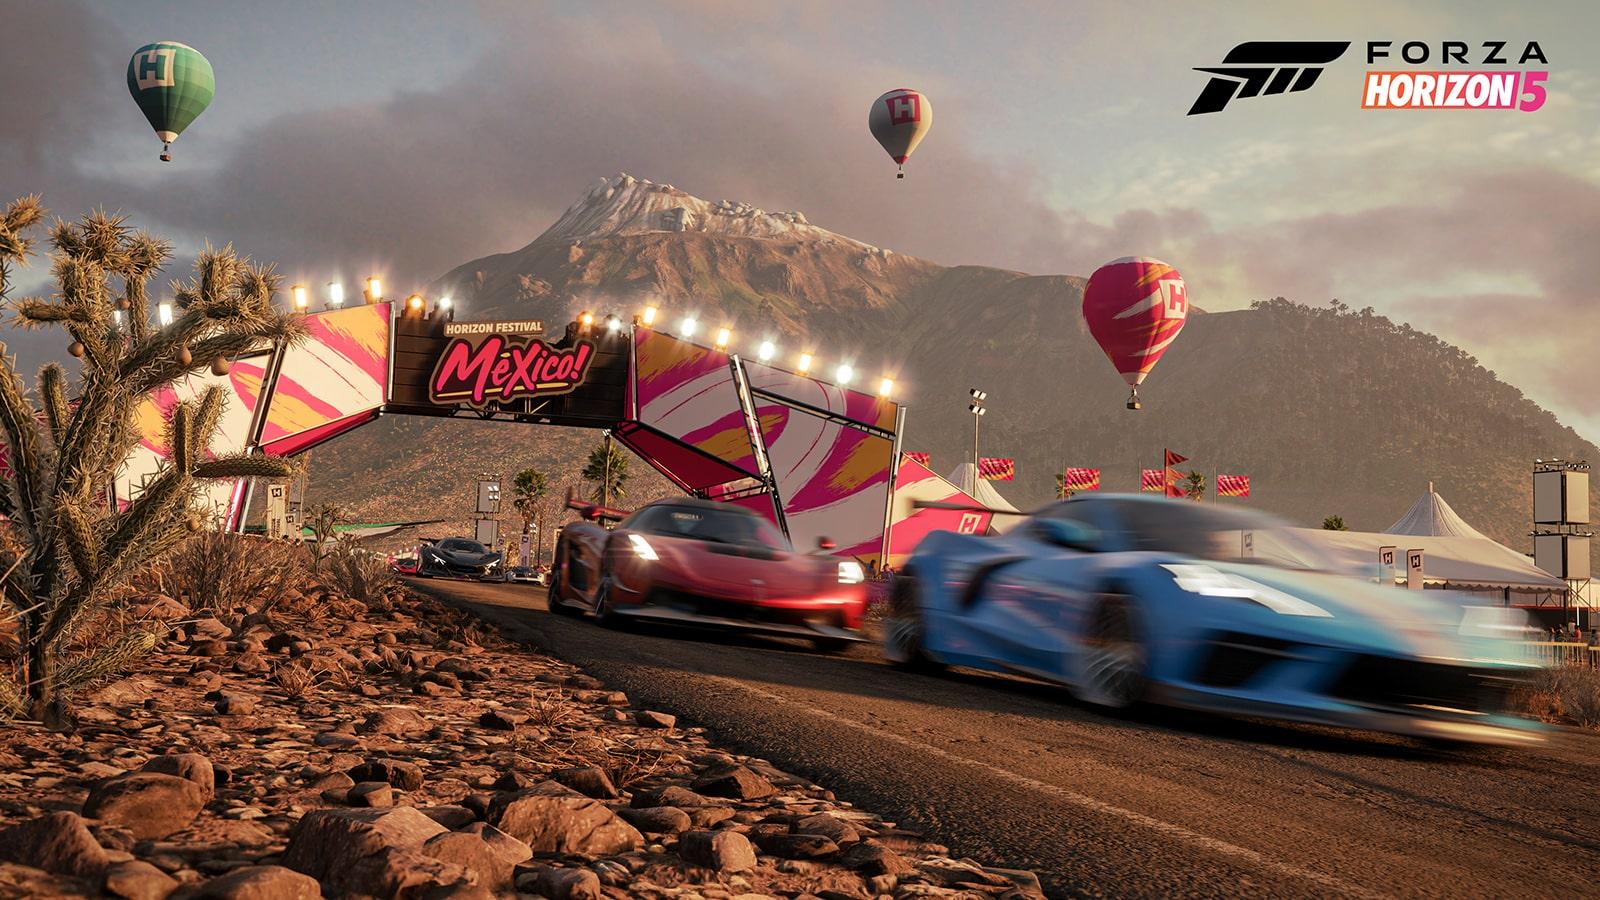 Game modes in Forza Horizon 5